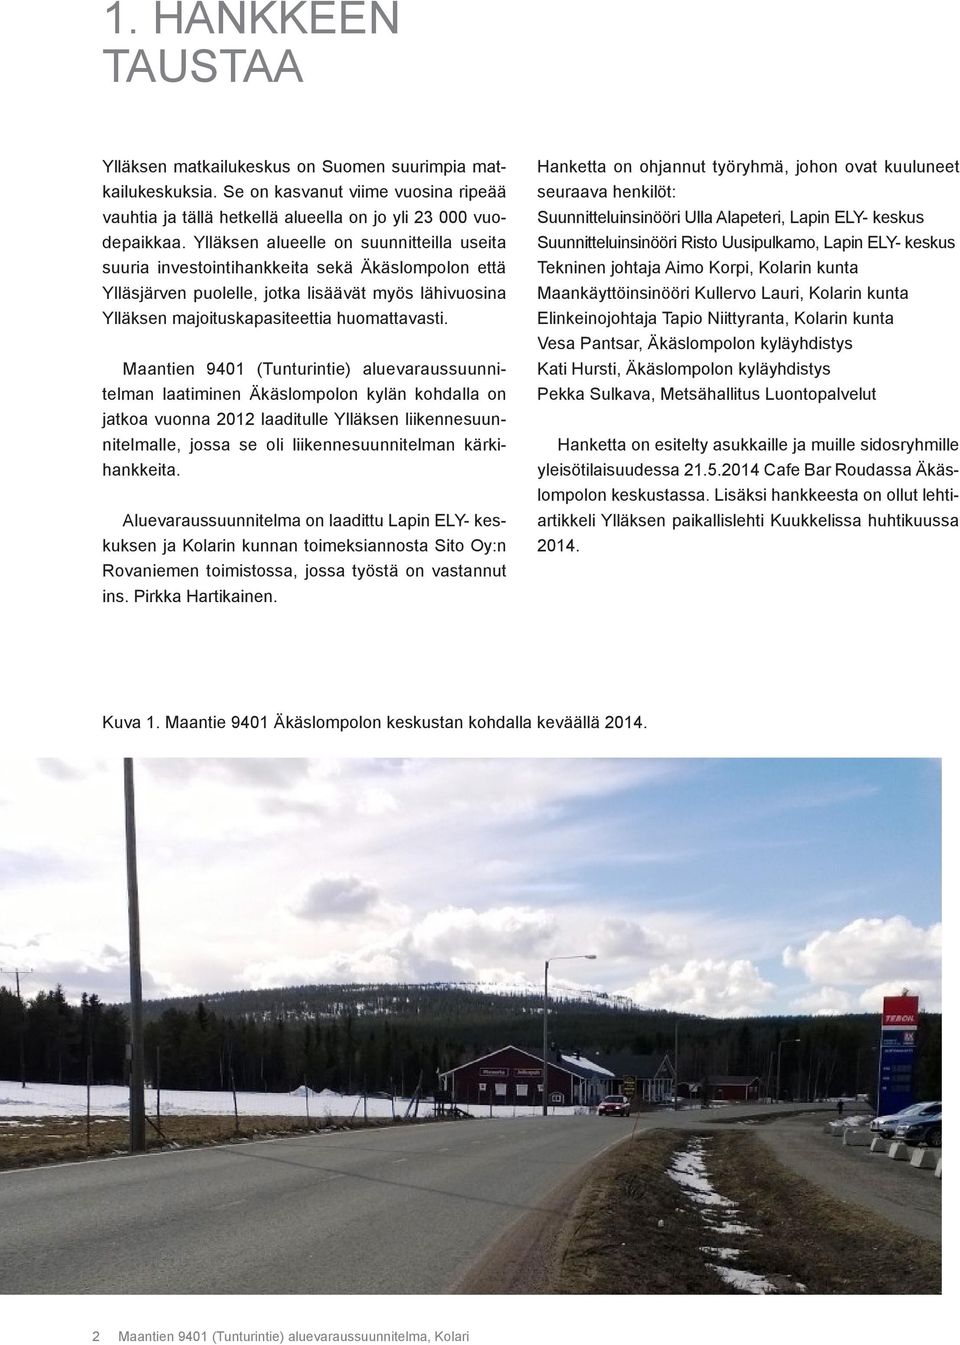 Maantien 9401 (Tunturintie) aluevaraussuunnitelman laatiminen Äkäslompolon kylän kohdalla on jatkoa vuonna 2012 laaditulle Ylläksen liikennesuunnitelmalle, jossa se oli liikennesuunnitelman